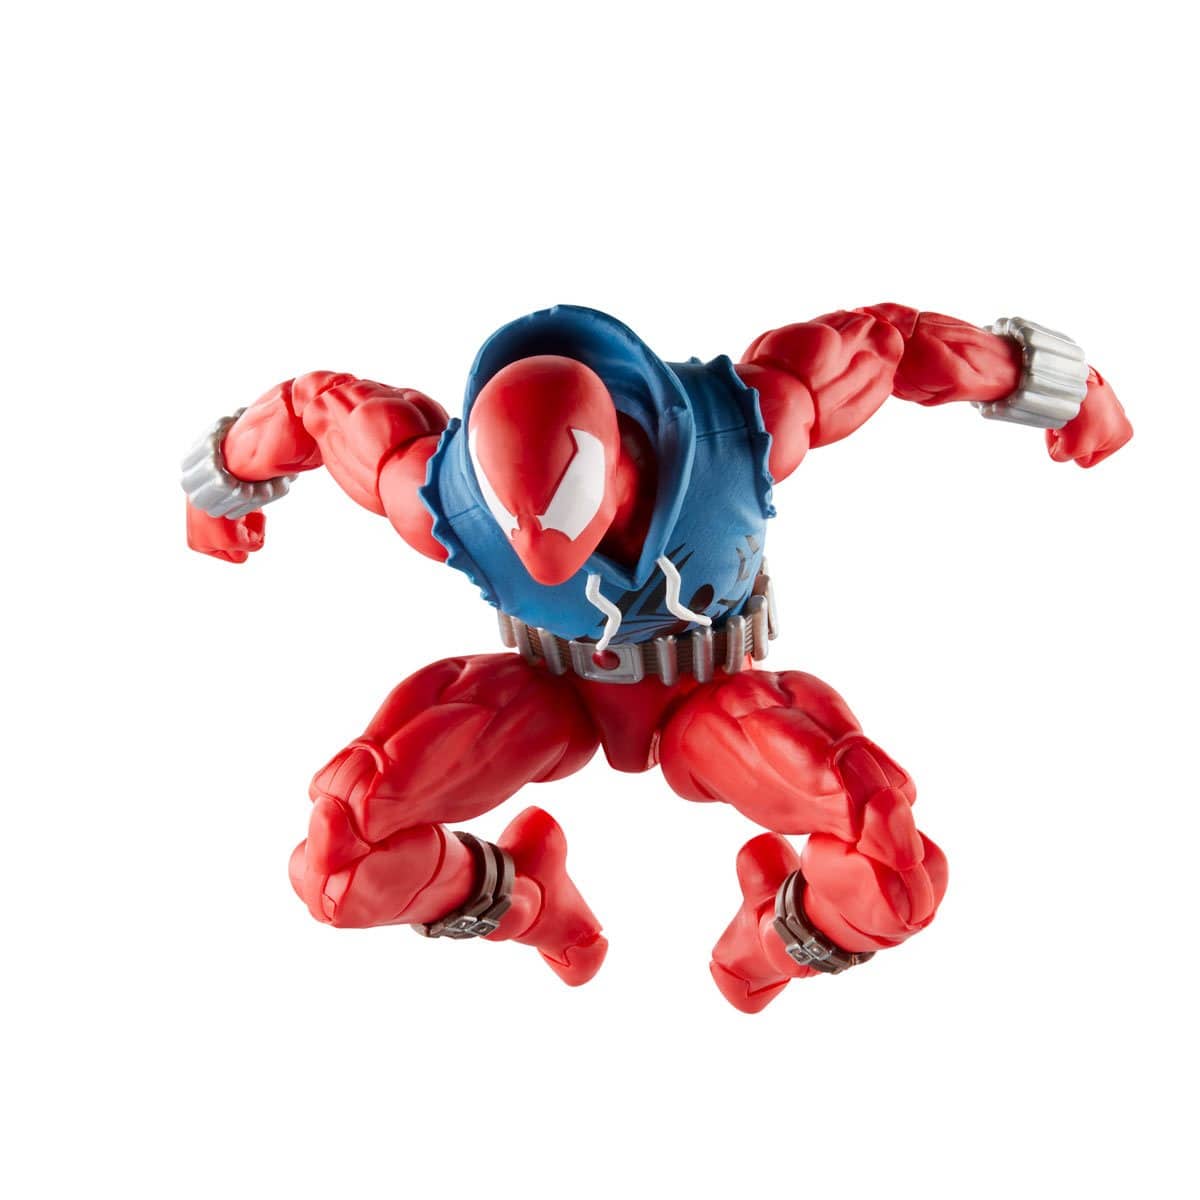 Spider-Man Marvel Legends Comic 6-inch Scarlet Spider Action Figure Jump